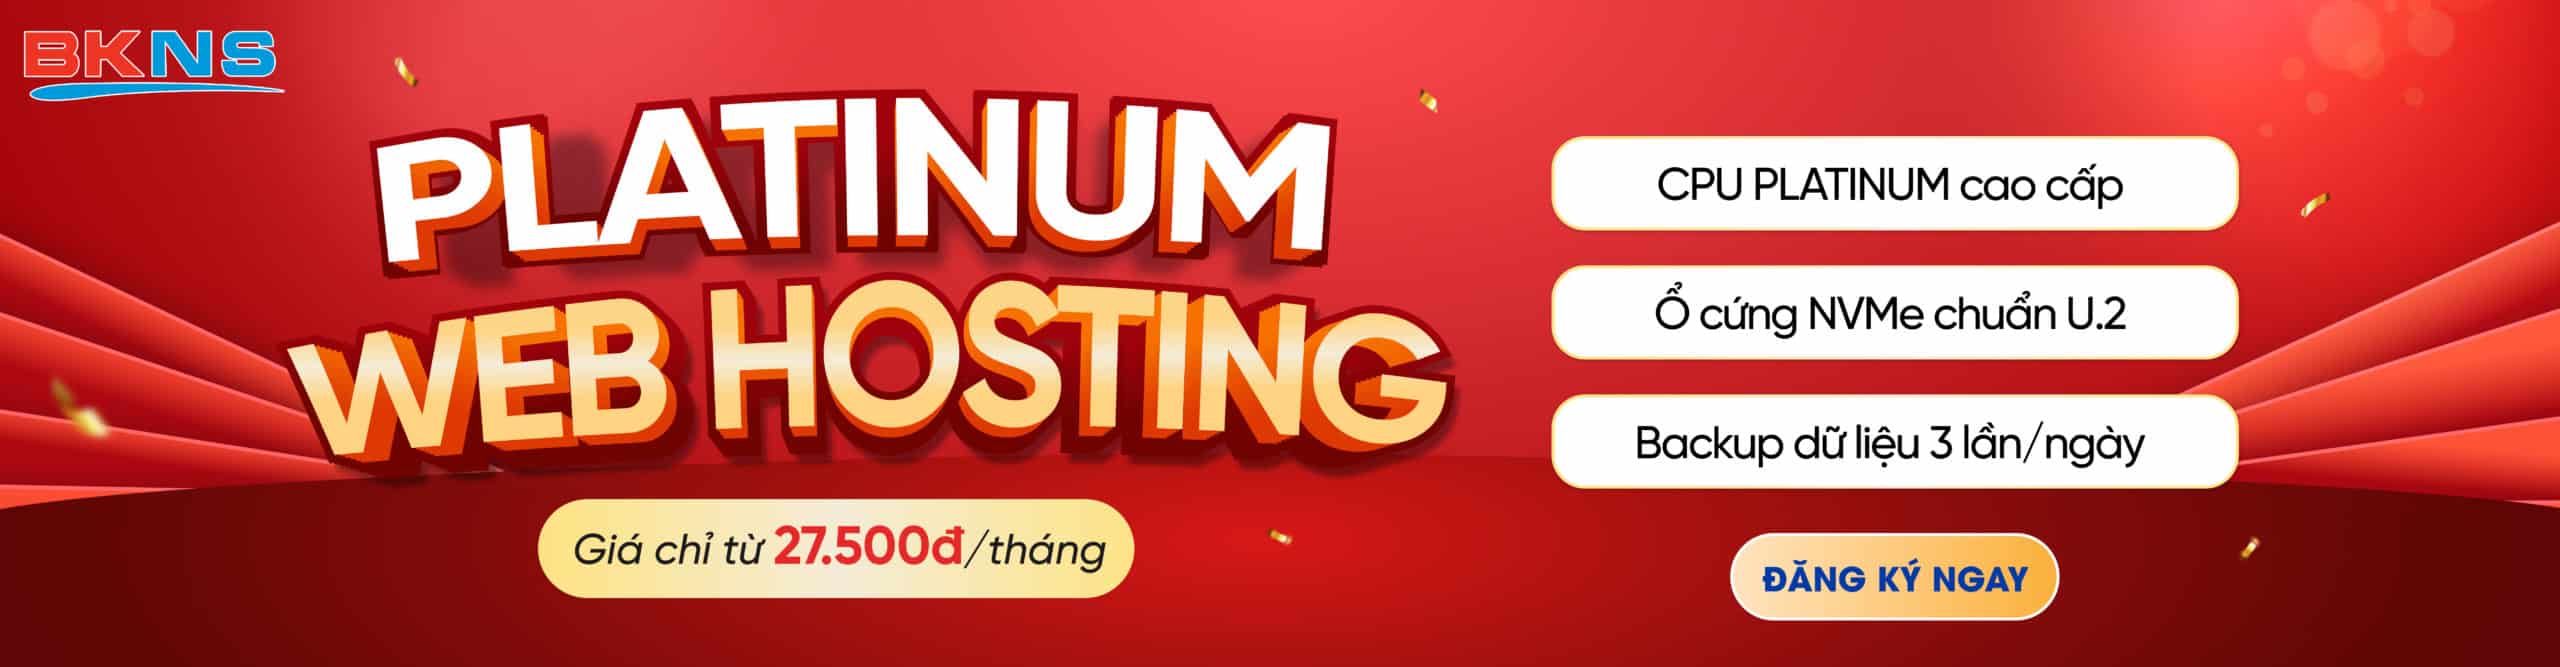 Giới thiệu Platinum web hosting